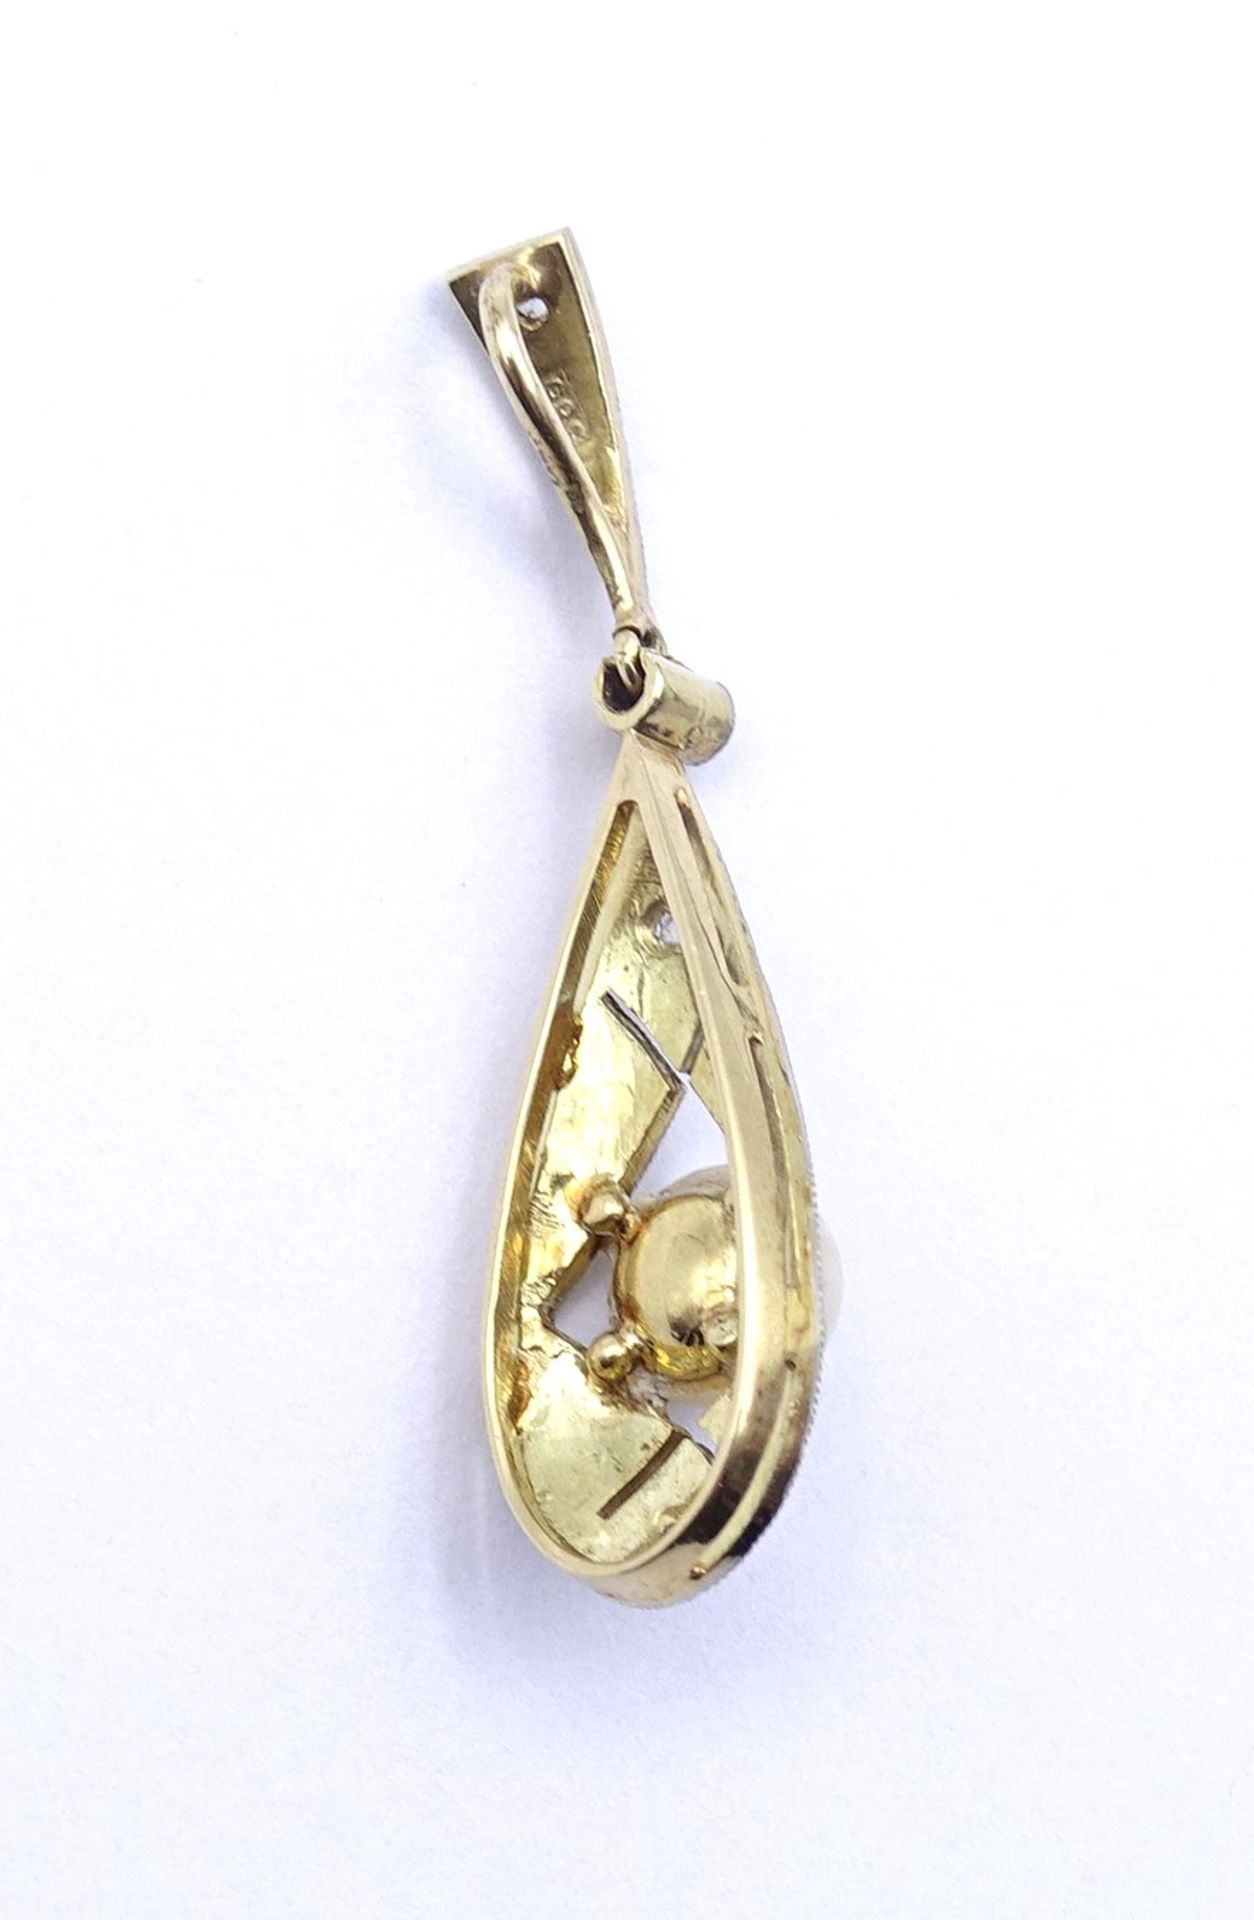 Art Deco Gold Anhänger 0.585, mit Perle und Diamantensplittern, L. 2,9cm, 1,30g. - Image 3 of 3